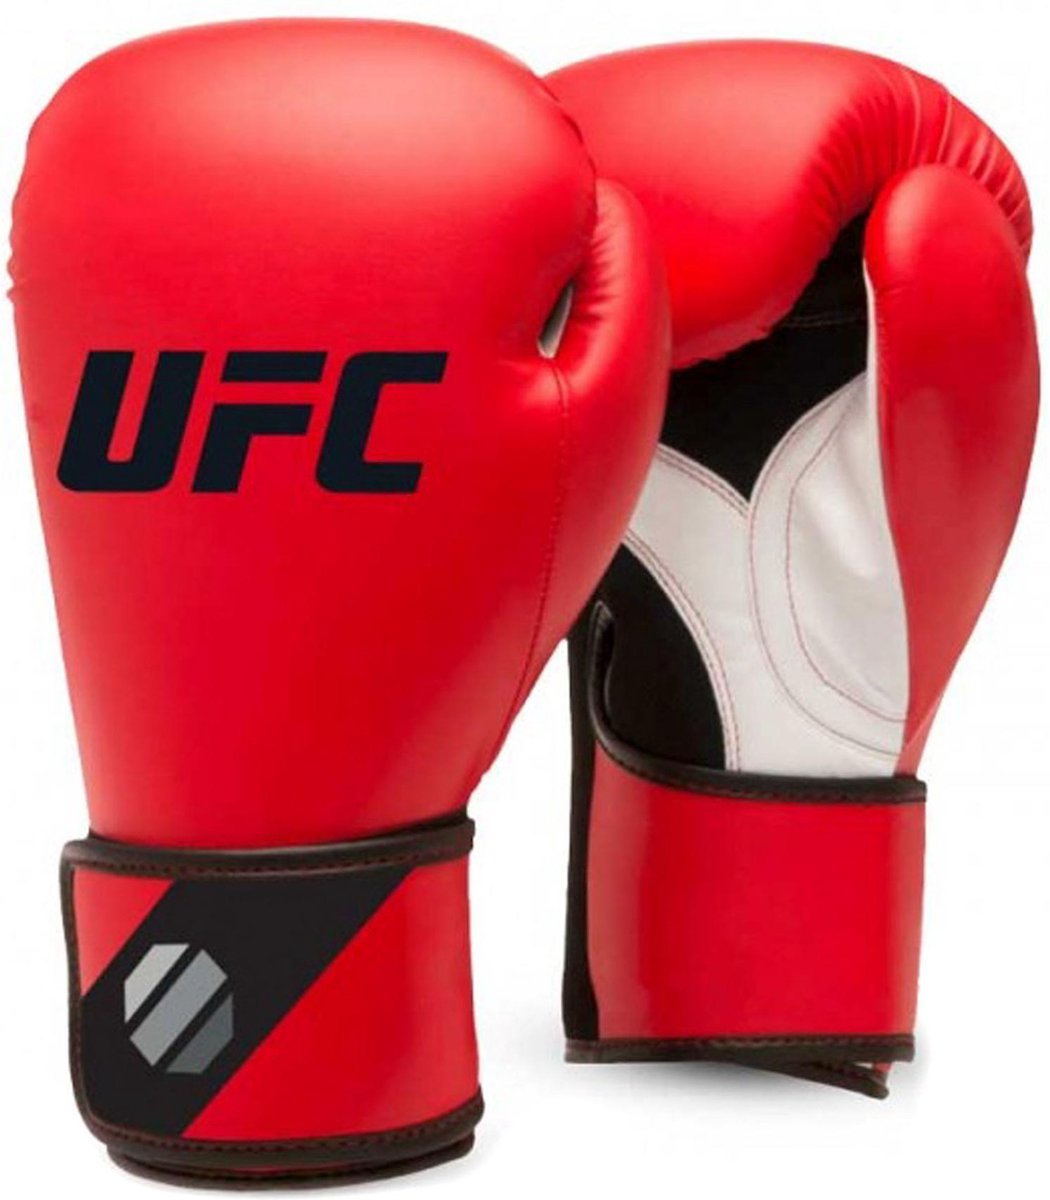 Training (kick)bokshandschoenen (14 oz - Zwart/Rood) - UFC